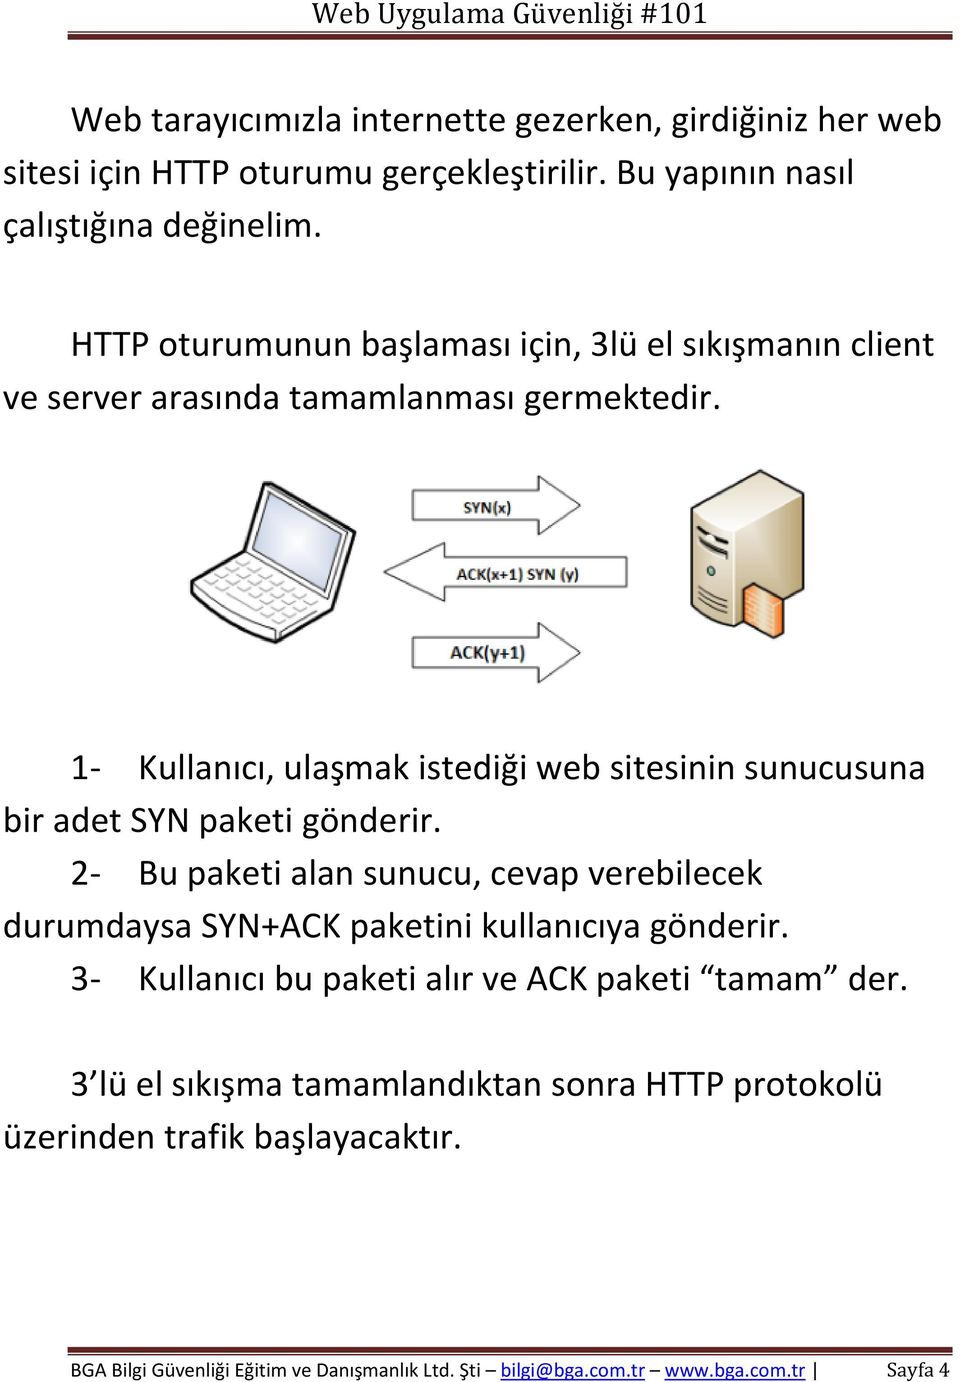 1- Kullanıcı, ulaşmak istediği web sitesinin sunucusuna bir adet SYN paketi gönderir.